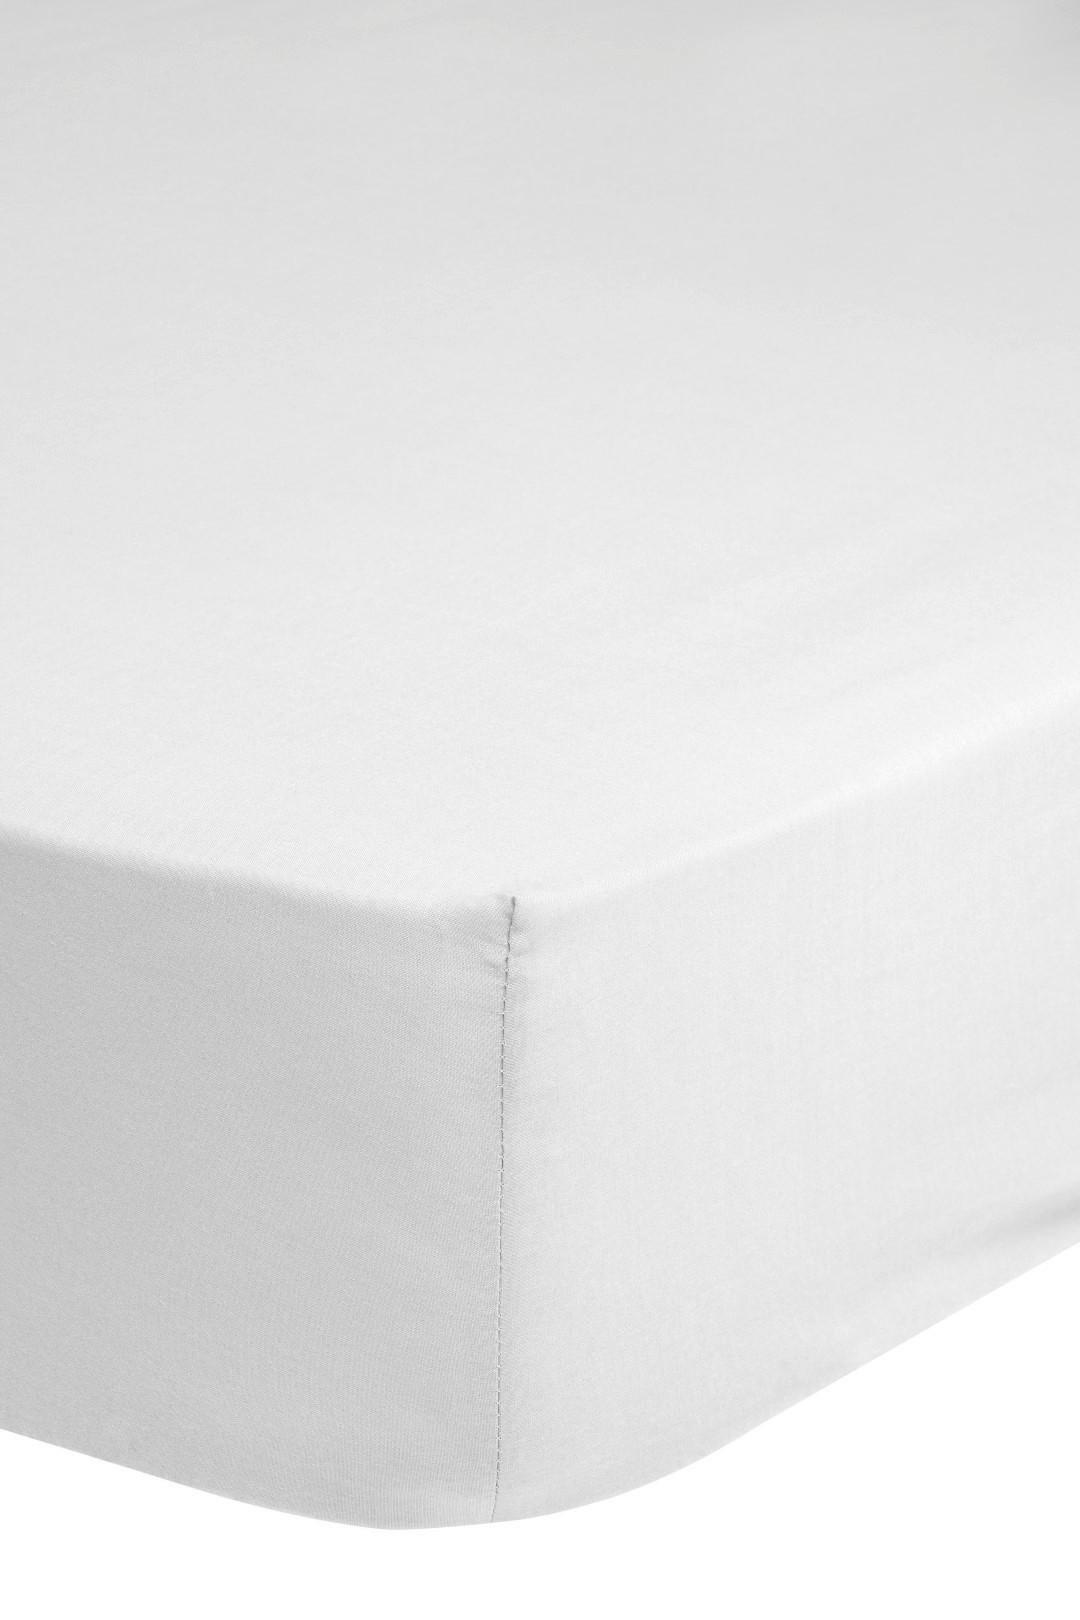 Elastické Prostěradlo Jersey 200x220cm Bavlna - bílá, Basics, textil (200/220cm) - MID.YOU